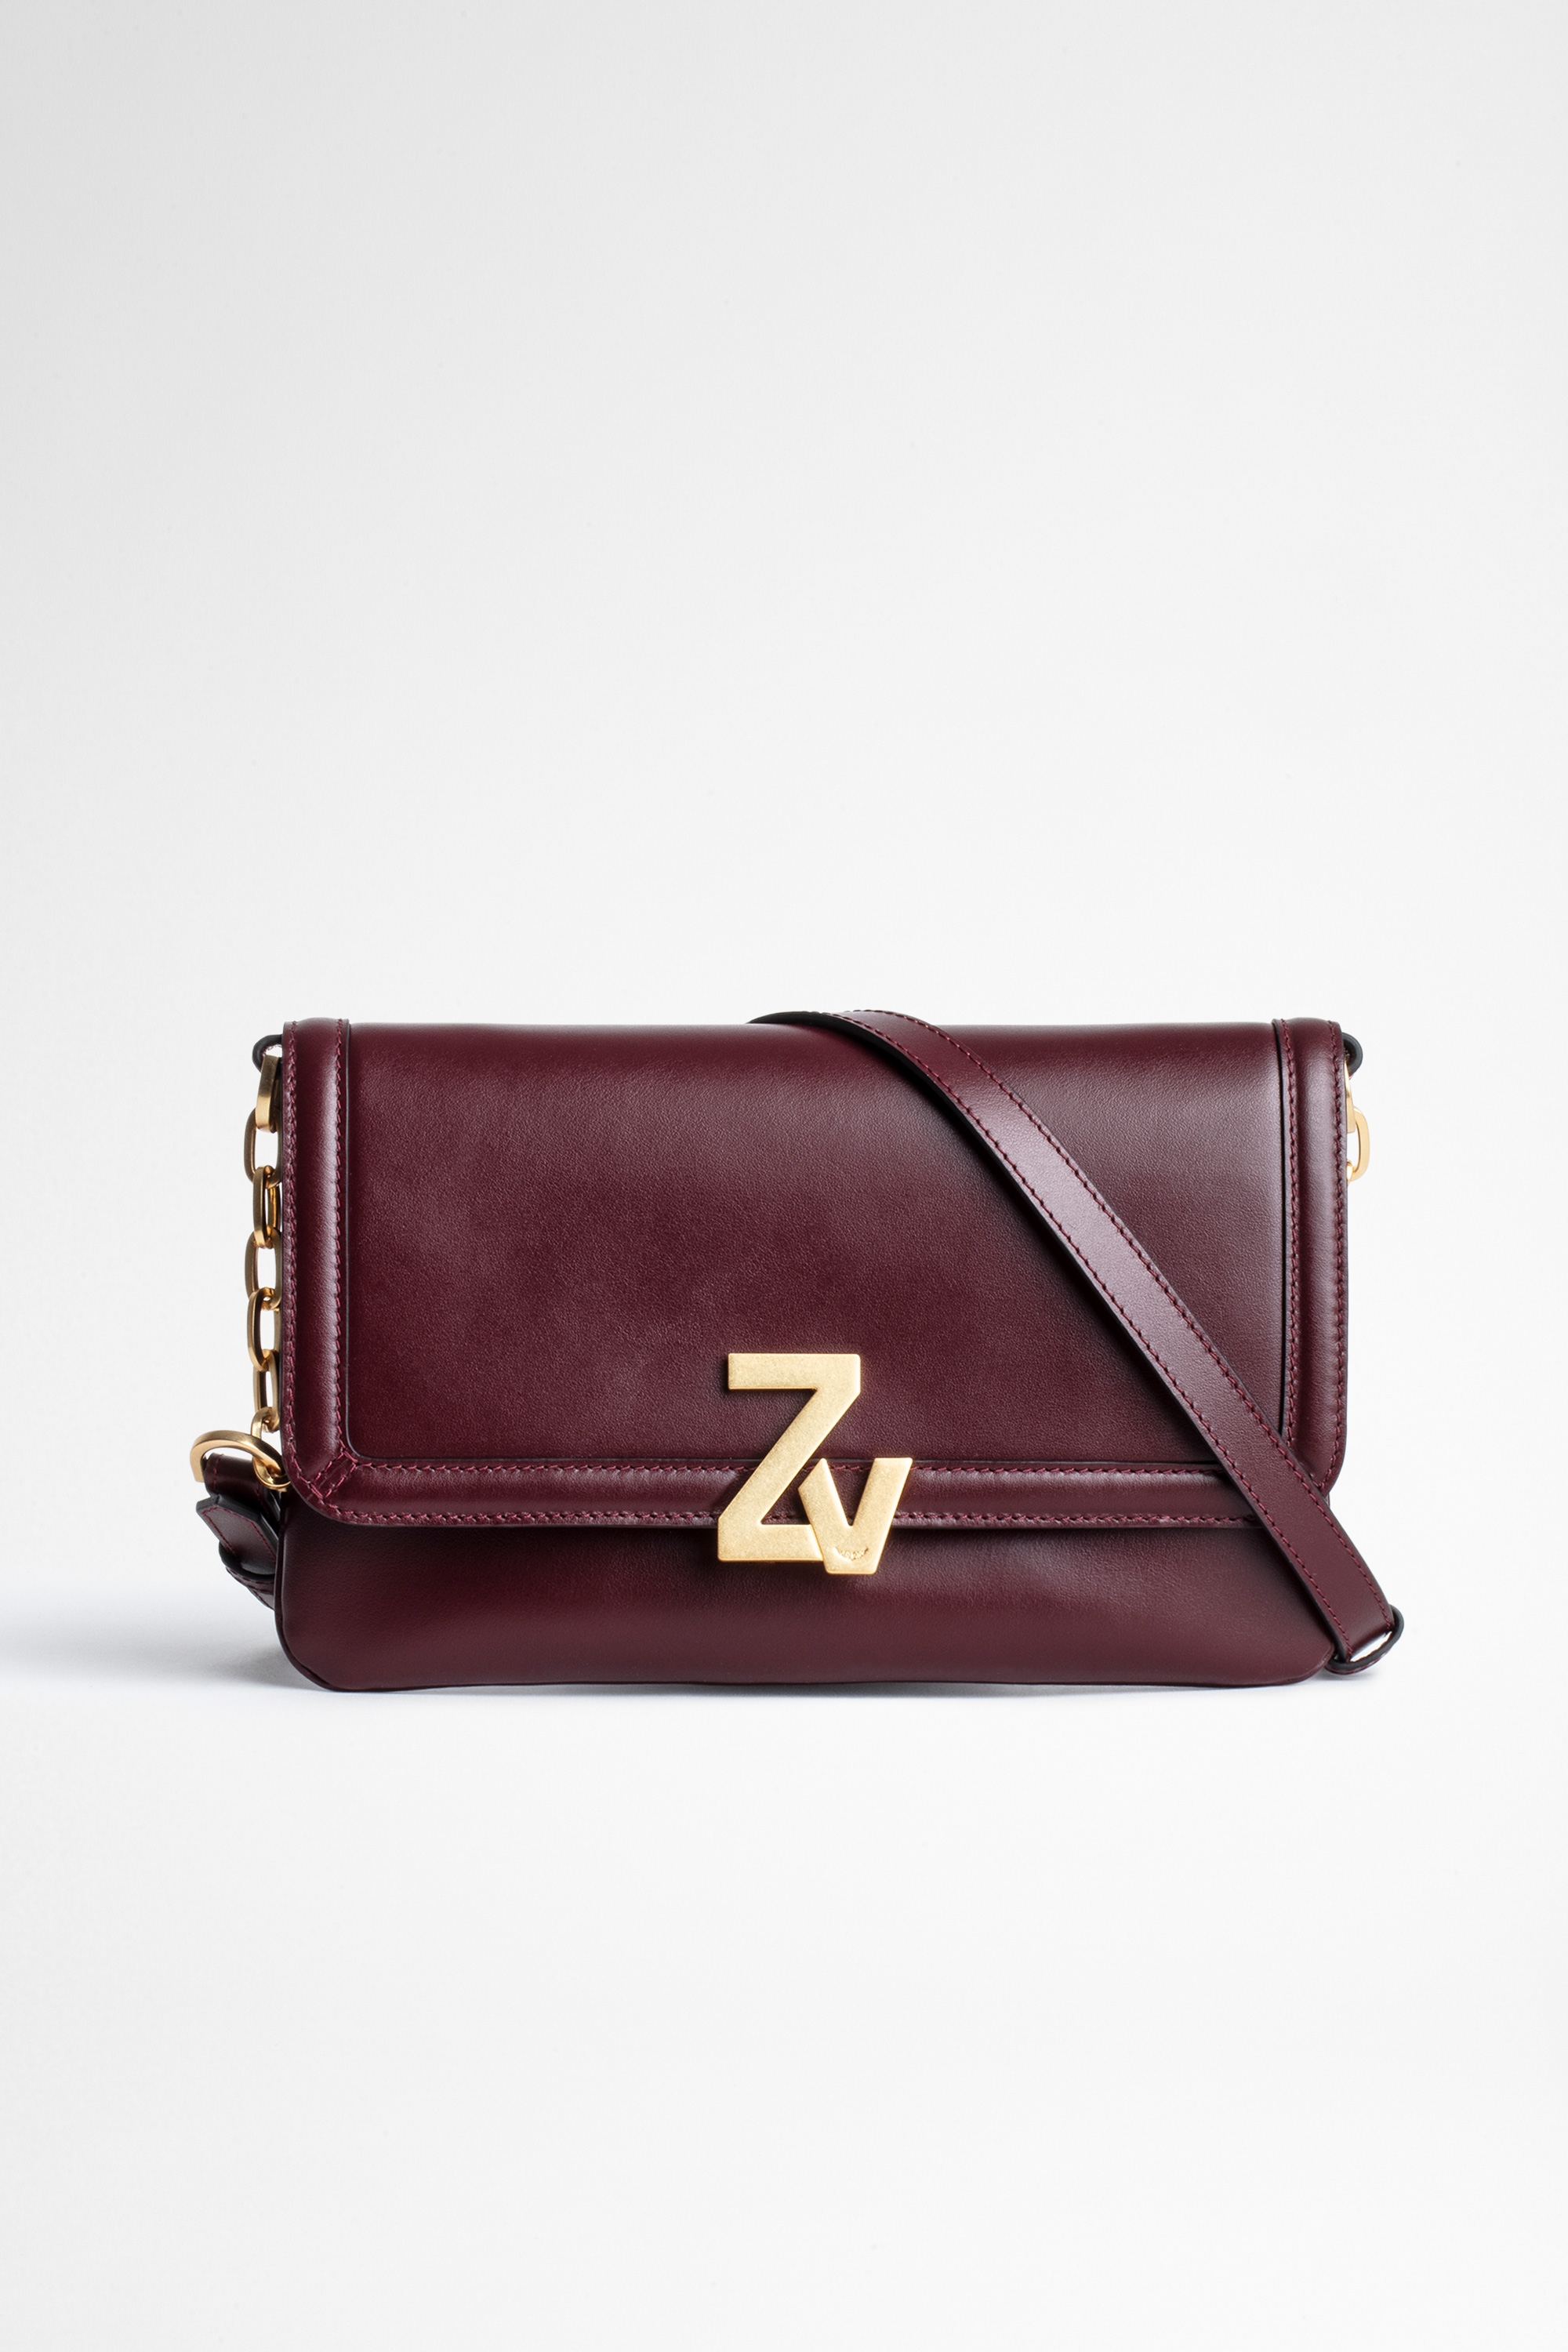 ZV Initiale Clutch Bag